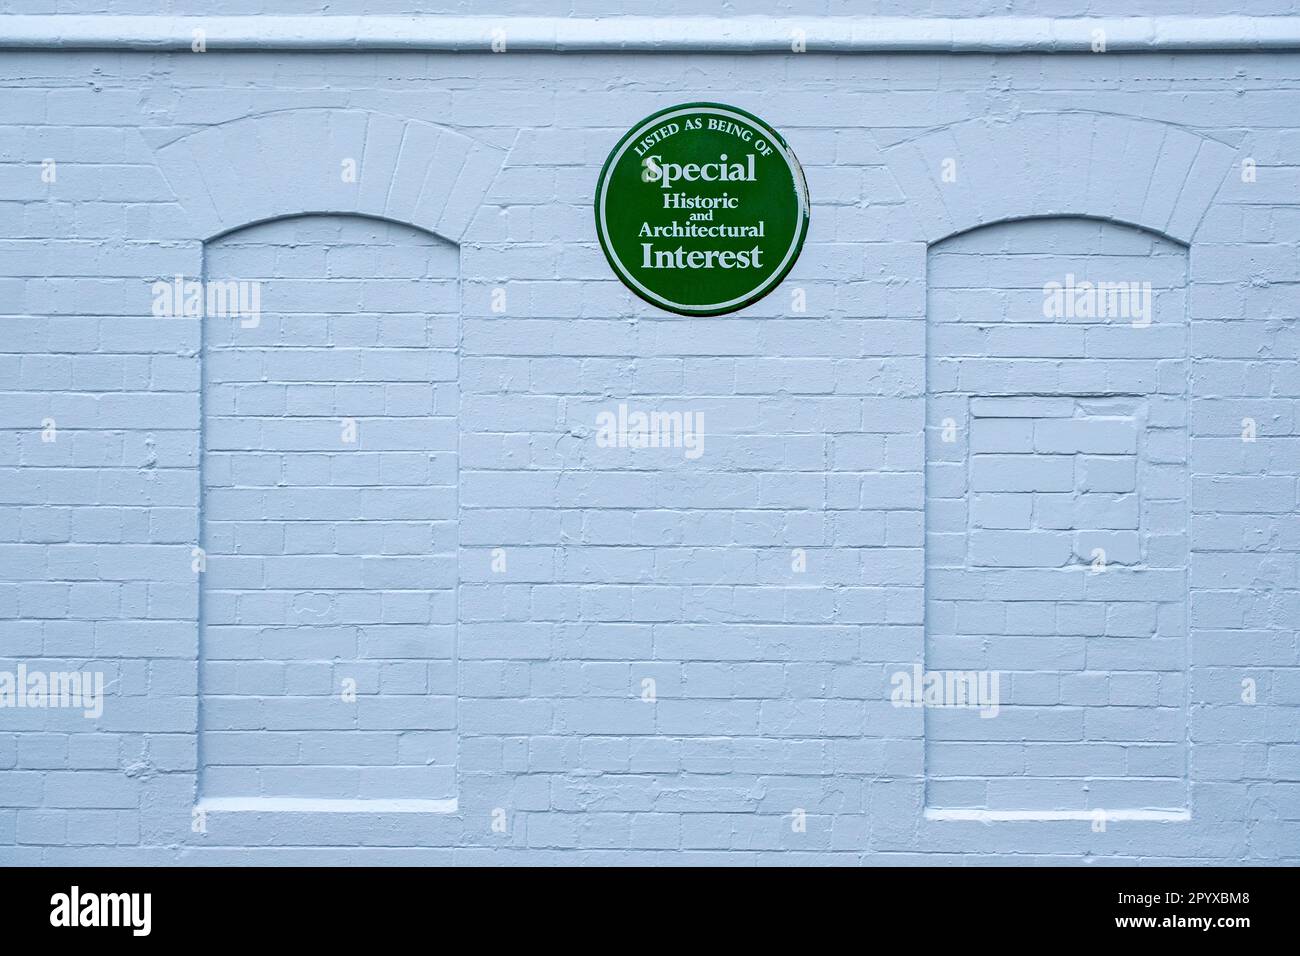 Grüne Tafel; gilt als besonders historisch und architektonisch interessant an der Außenwand des Lyceum Theatre in Crewe Cheshire UK Stockfoto